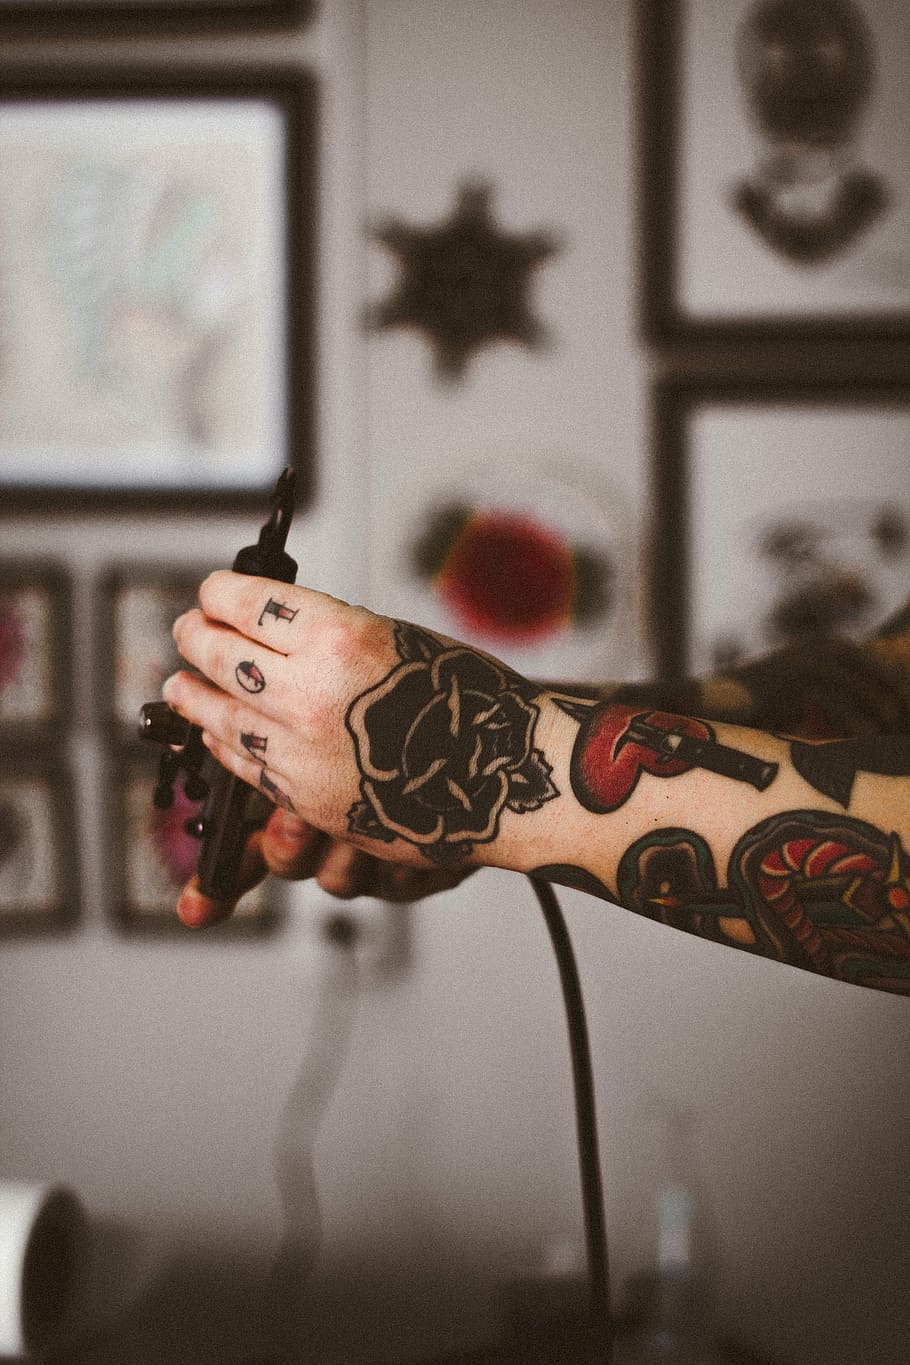 seletivo, fotografia de foco, pessoa, mão, preto, tinta, tatuagens, braço, corpo, tatuagem